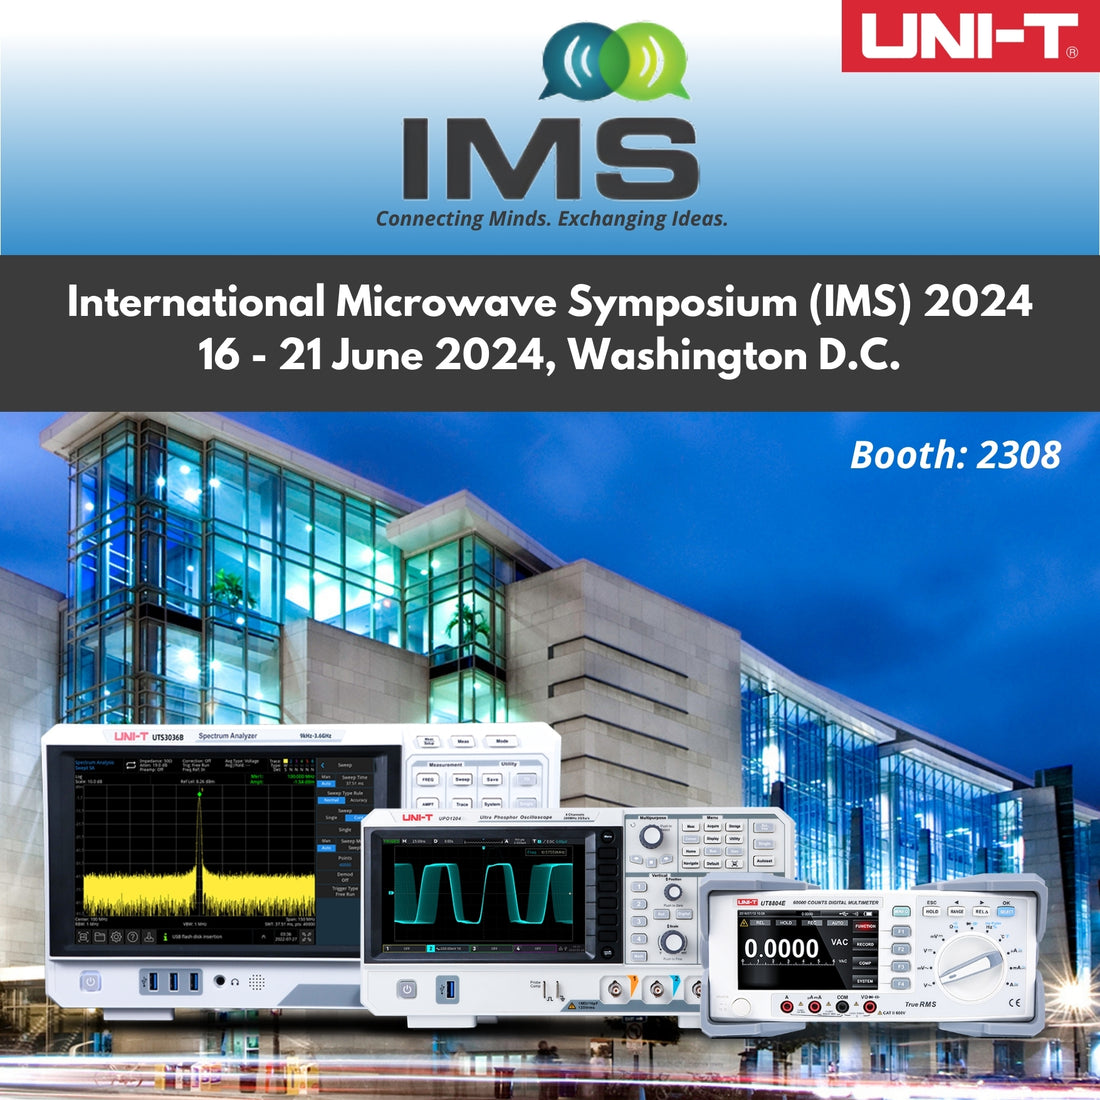 IMS - International Microwave Symposium